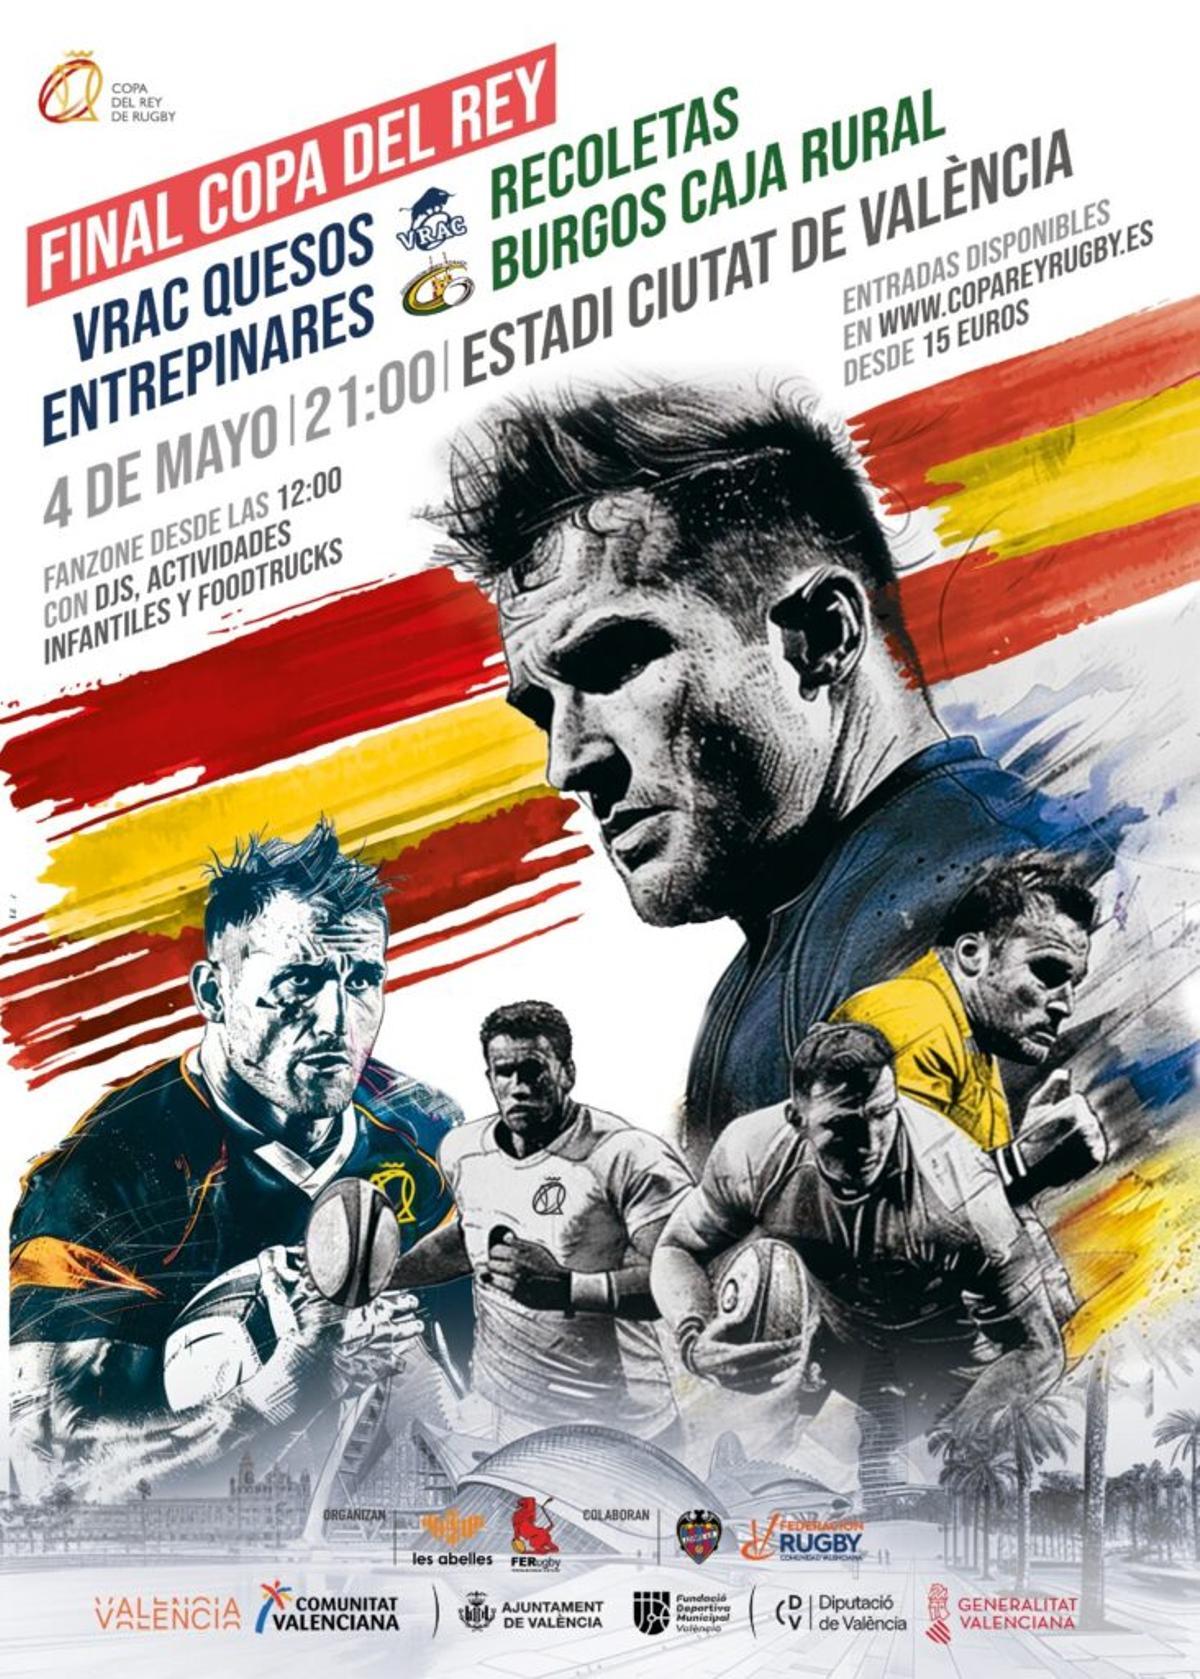 Cartel de la Final de Copa del Rey entre VRAC y Burgos en València